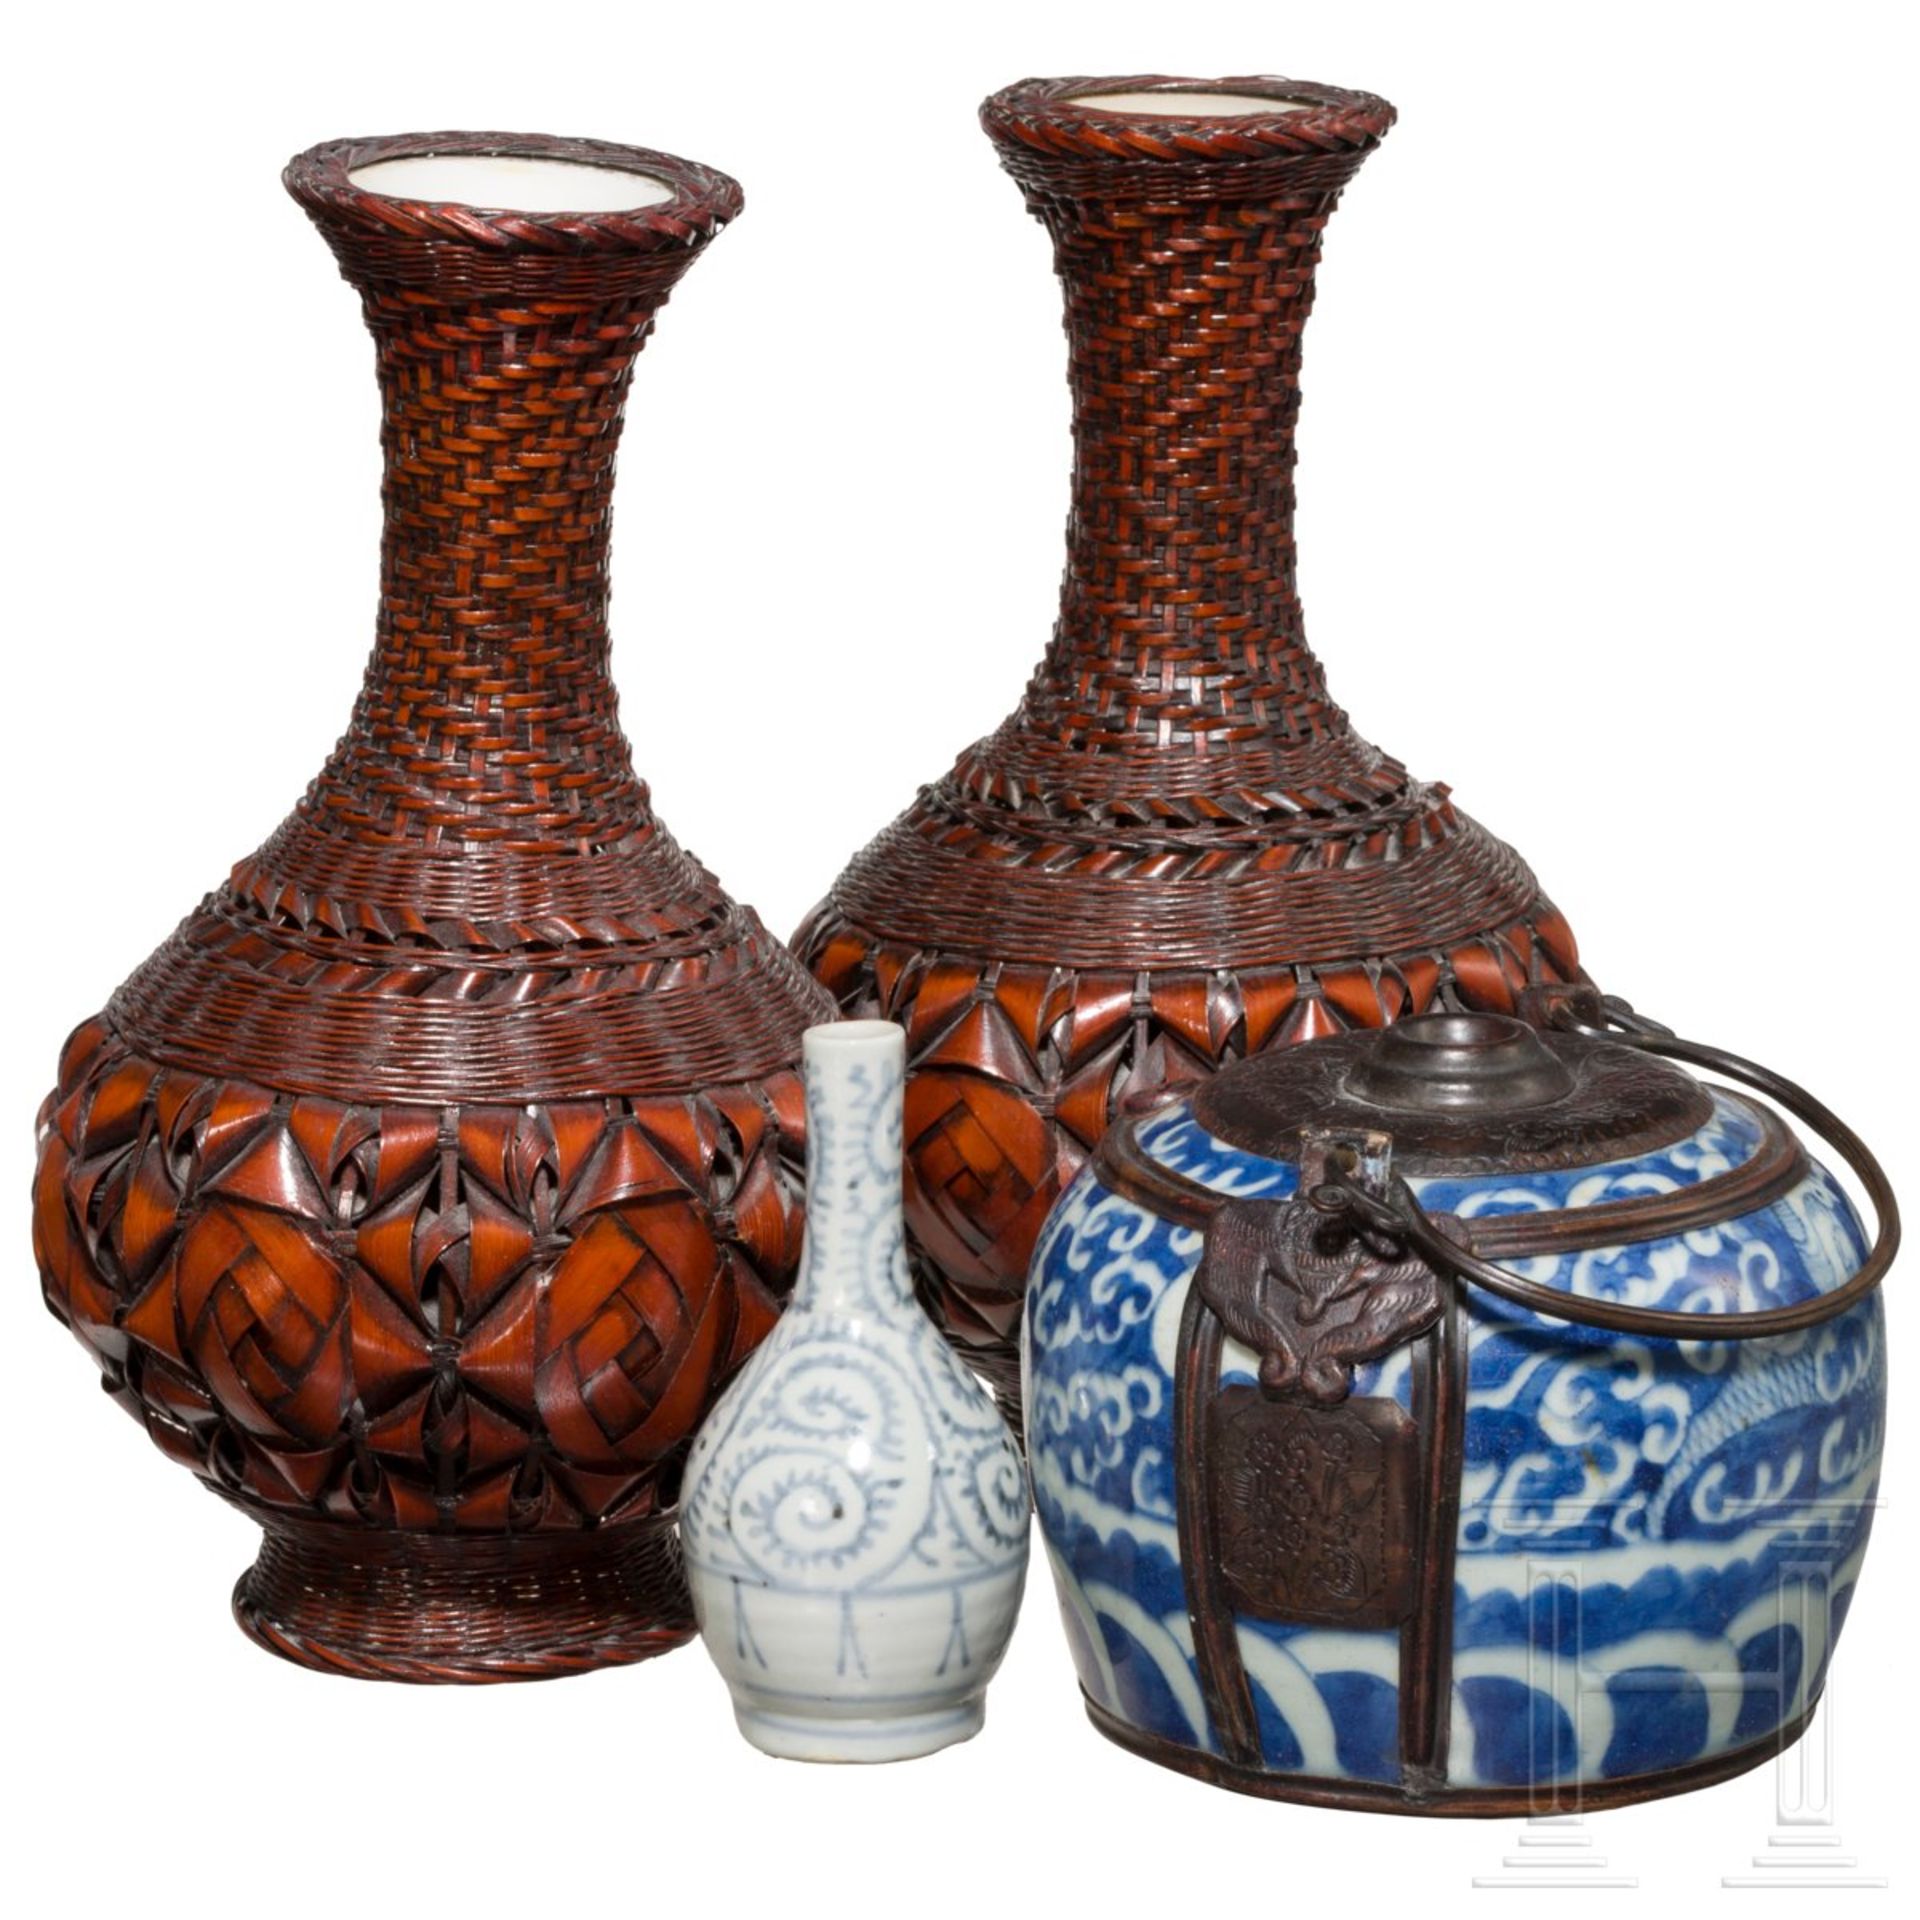 Konvolut Japan bestehend aus zwei Ikebana-Vasen, Miniaturvase und Henkeltopf, Japan, 19. Jhdt - Bild 2 aus 4